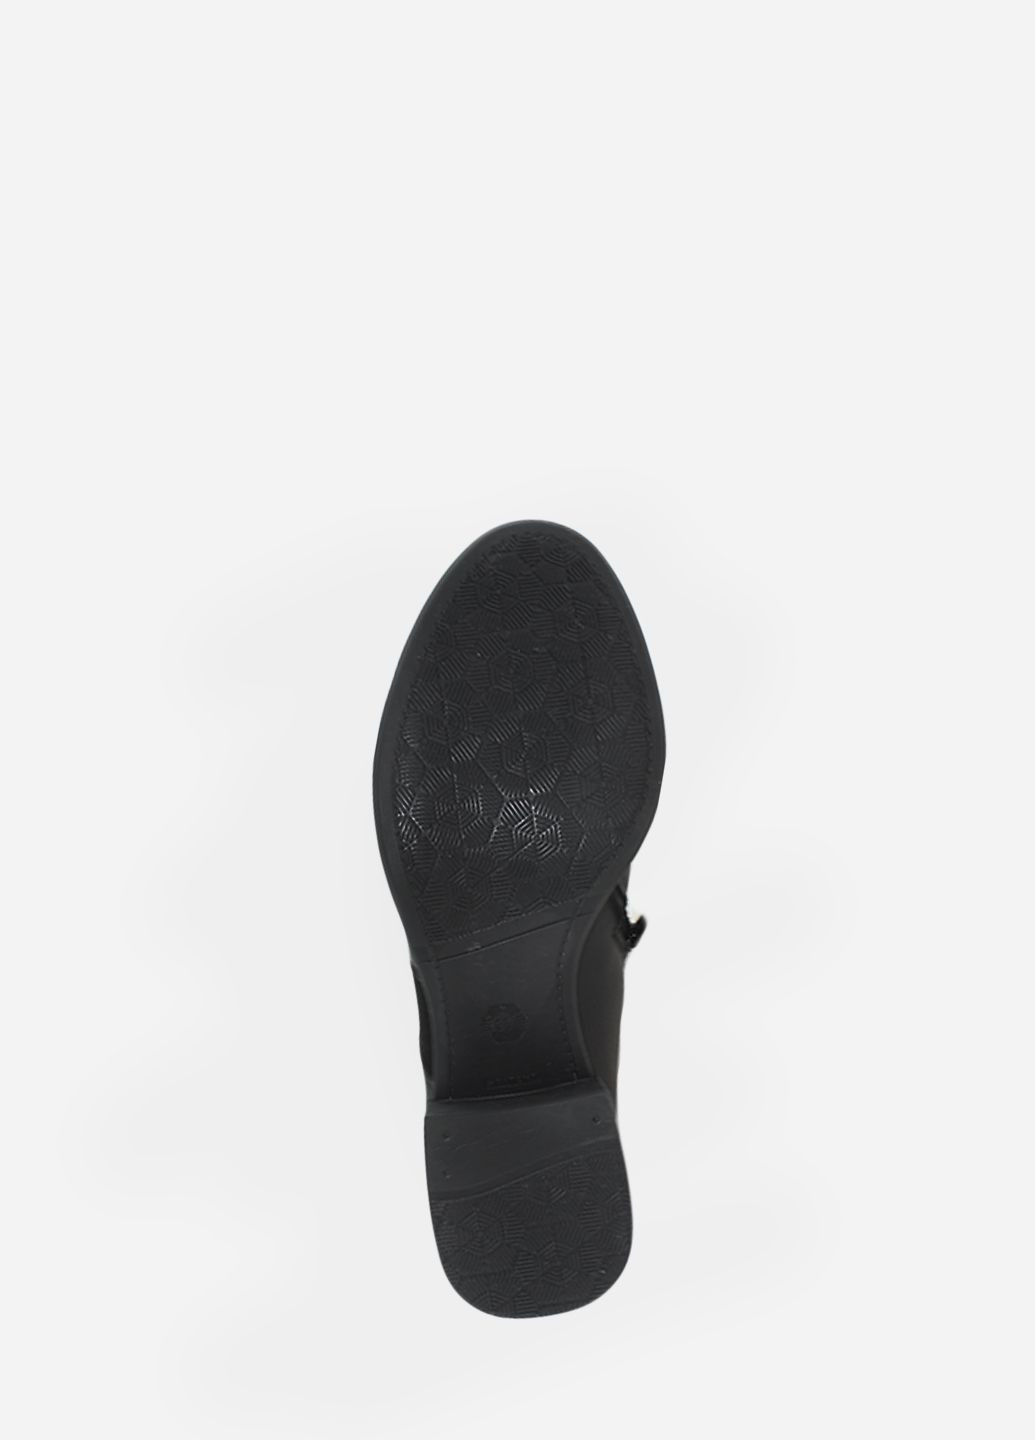 Осенние ботинки rk0805 черный Kseniya из натуральной замши